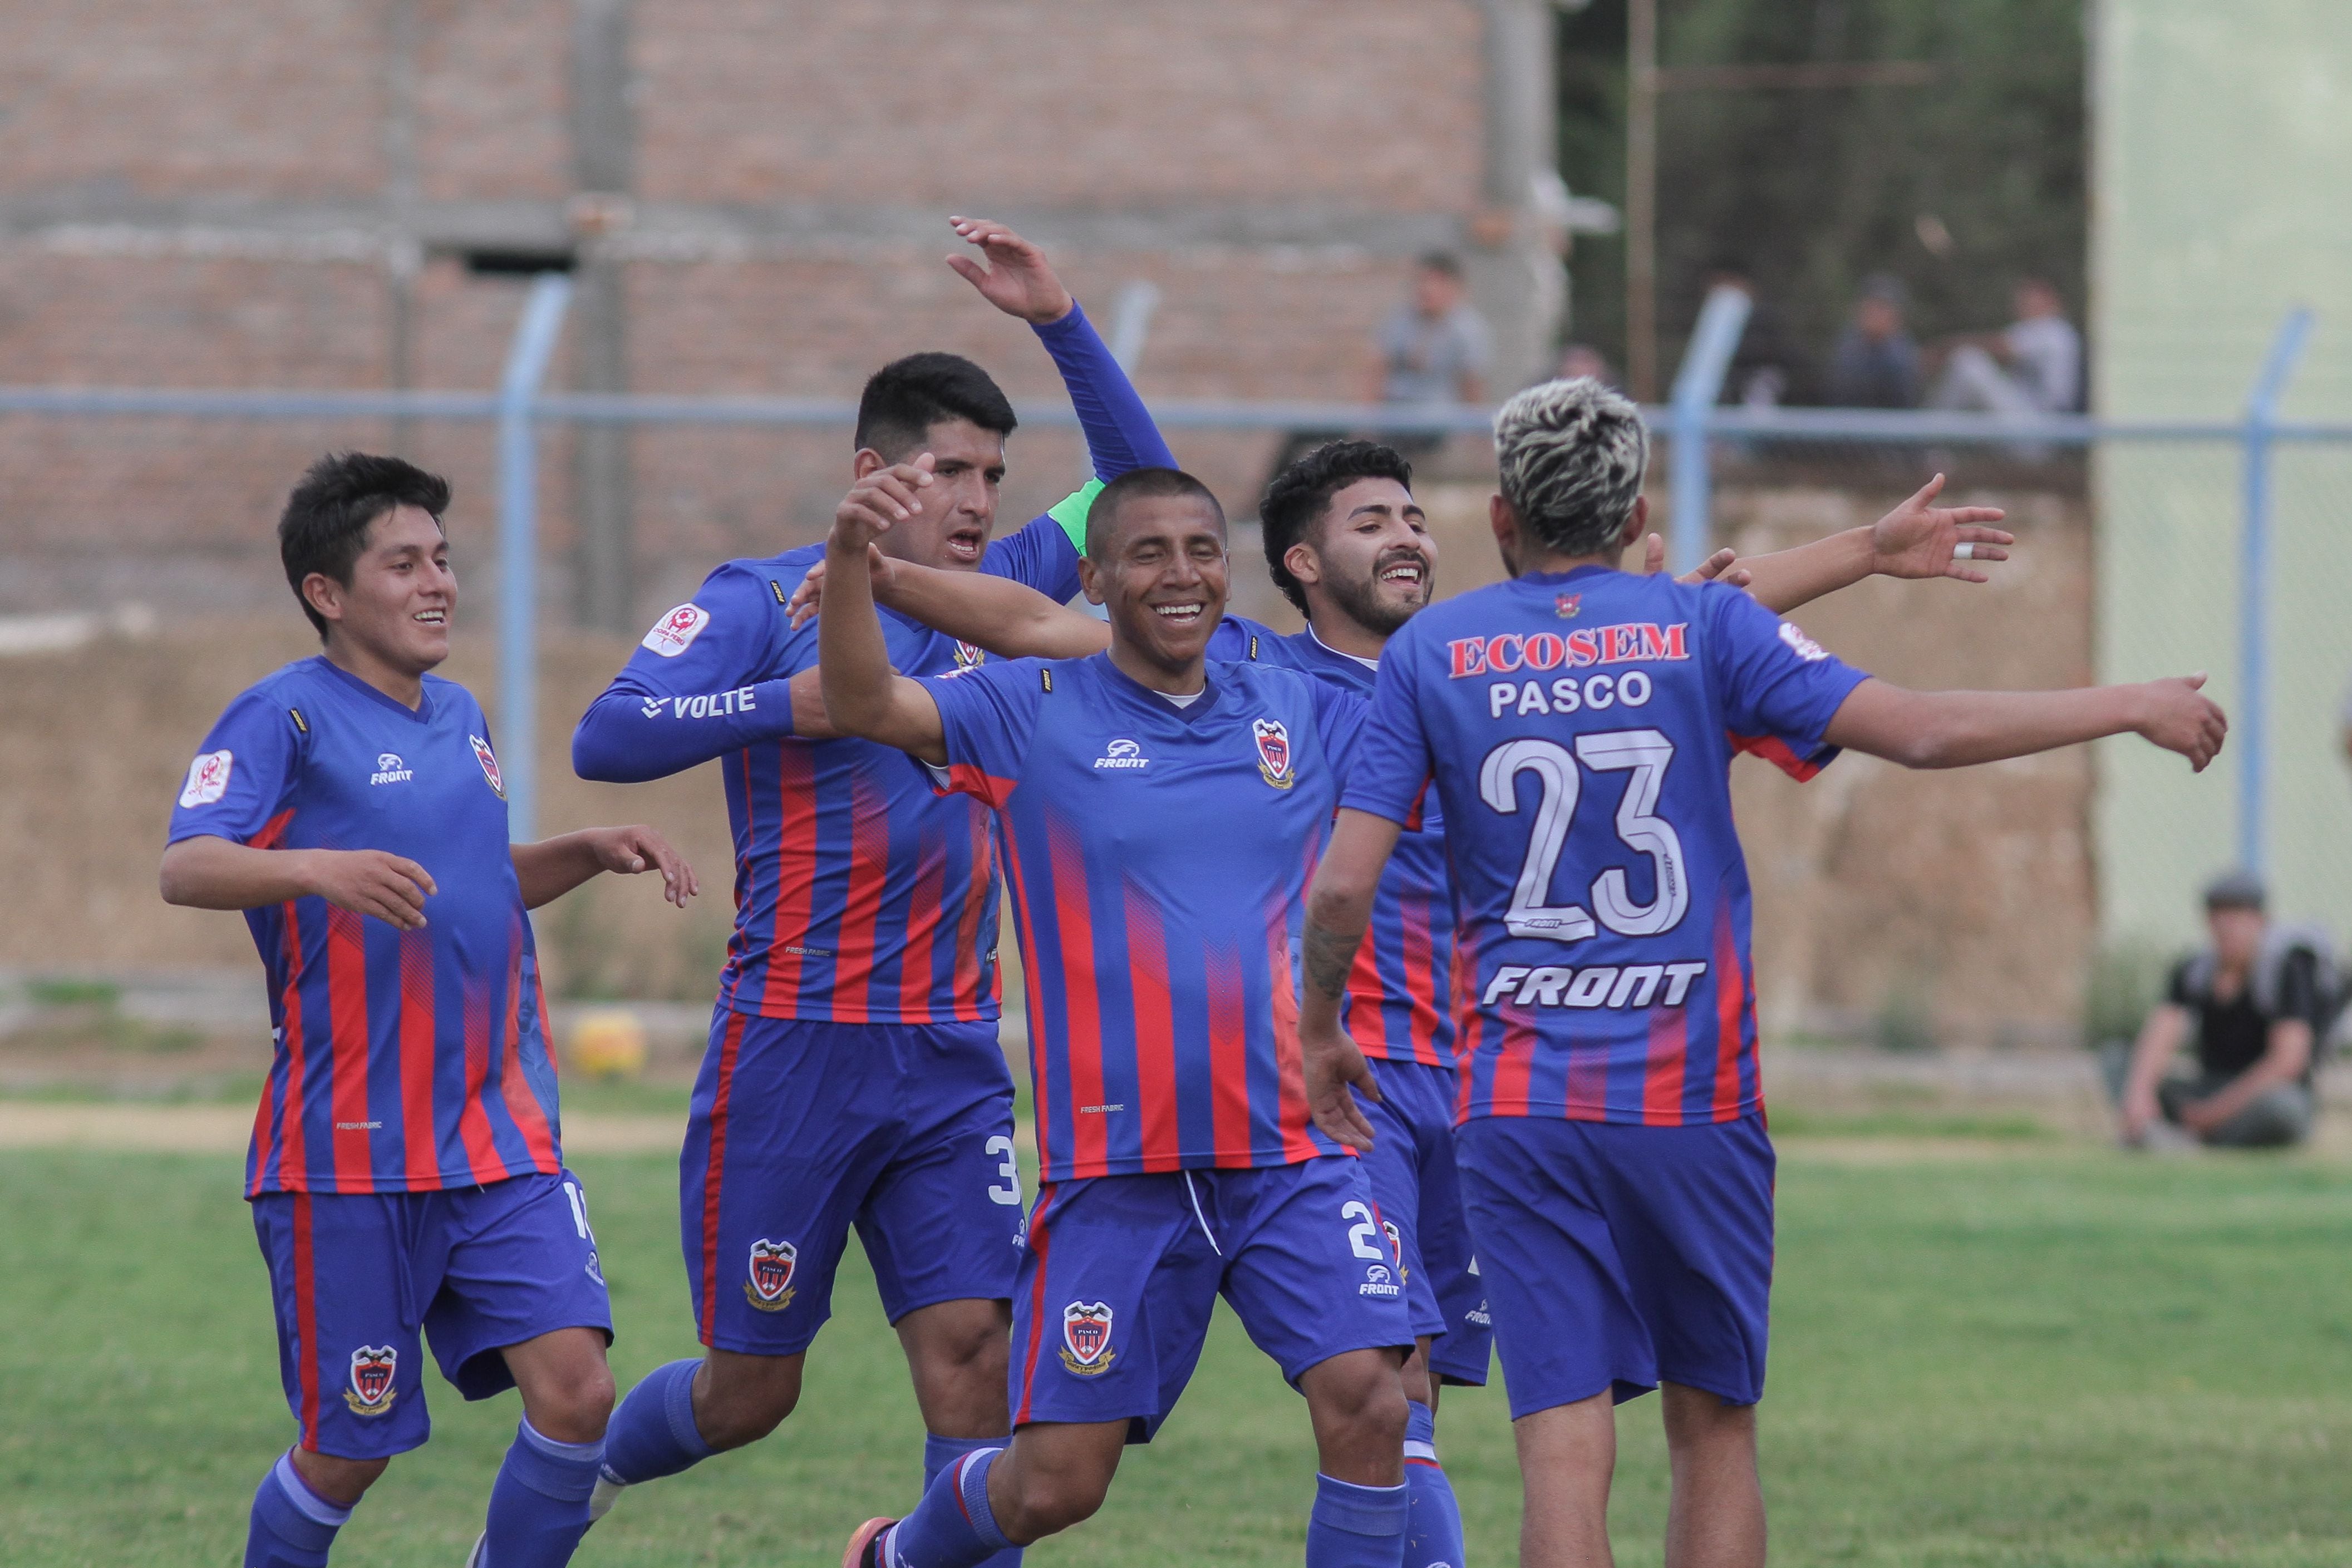 PERU CUP: ECOSEM Pasco defeated “Montacanasta” in Concepción (PHOTOS)